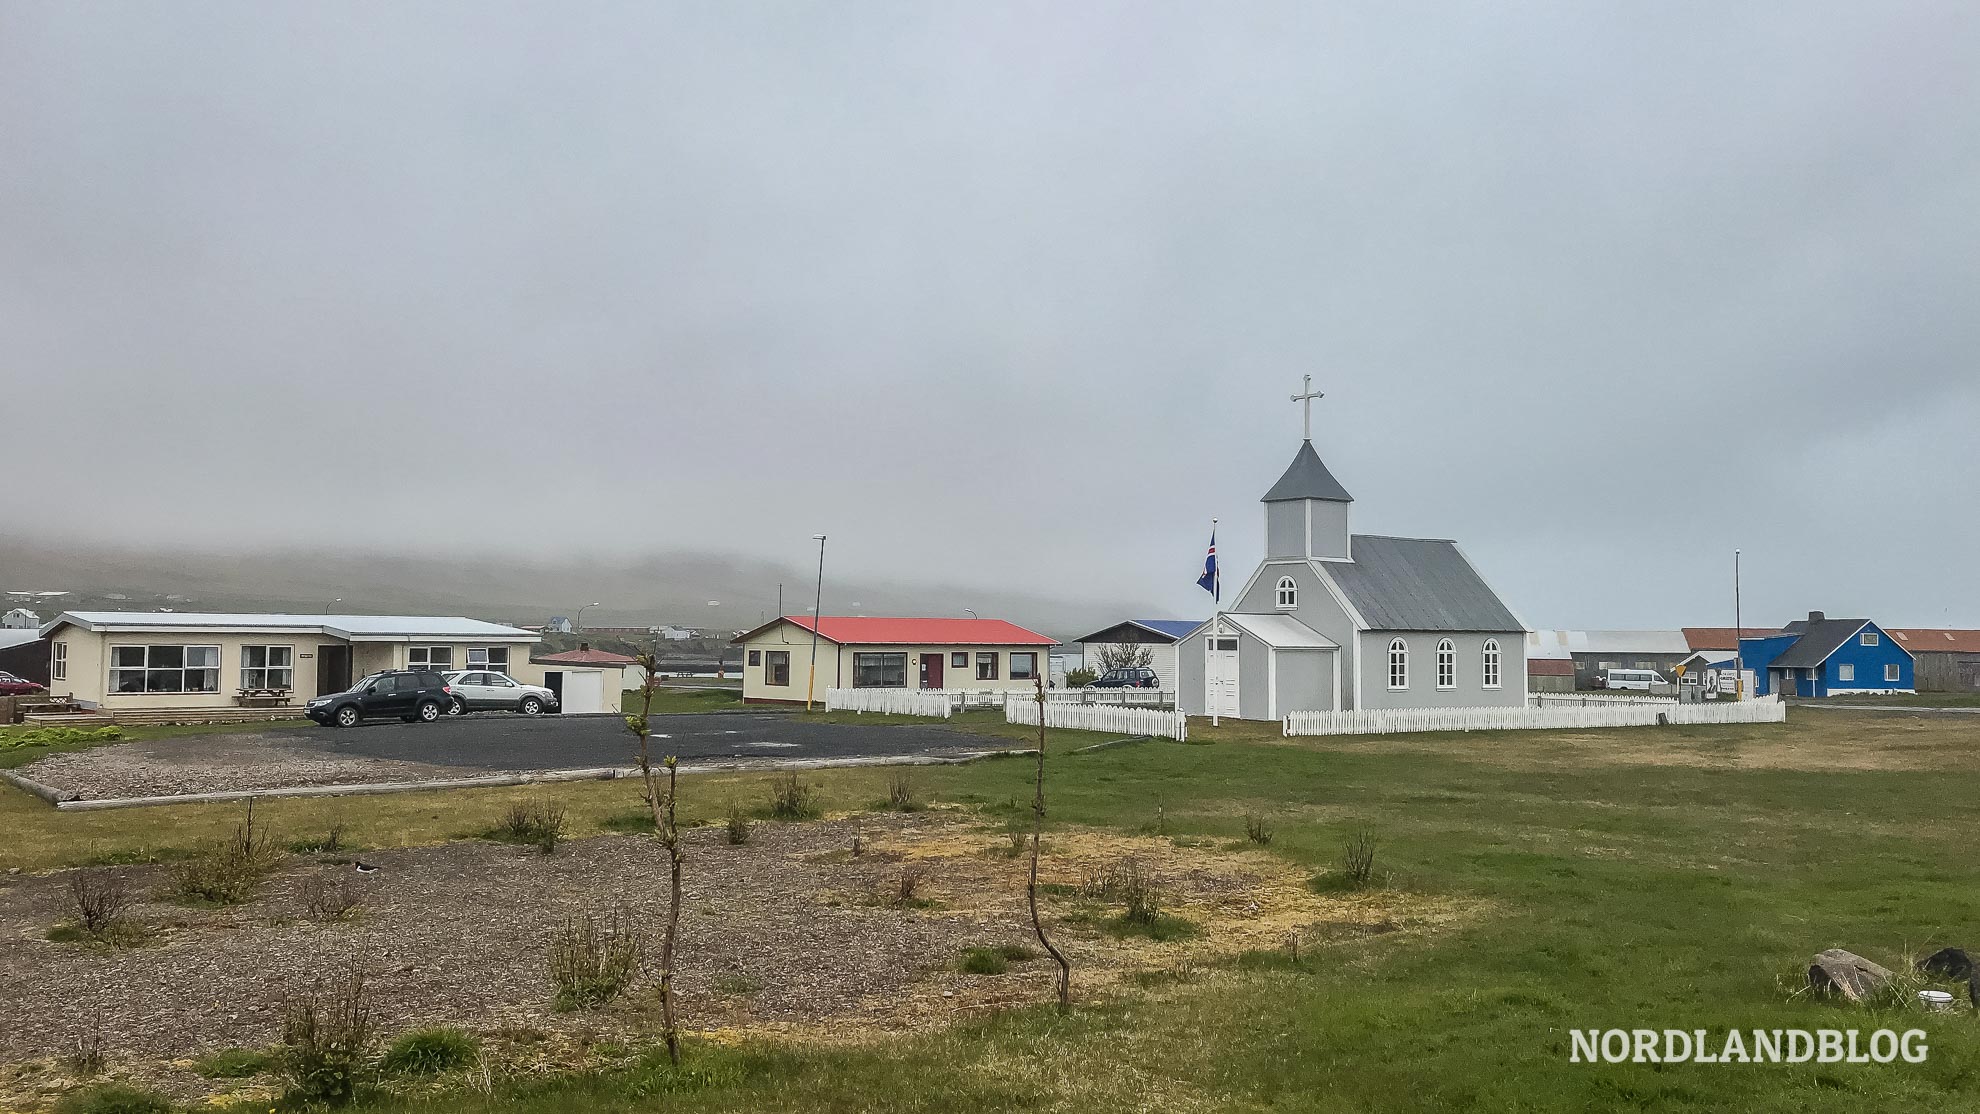 Bild vom Dorf Borgarfjörður in Island (Nordlandblog)